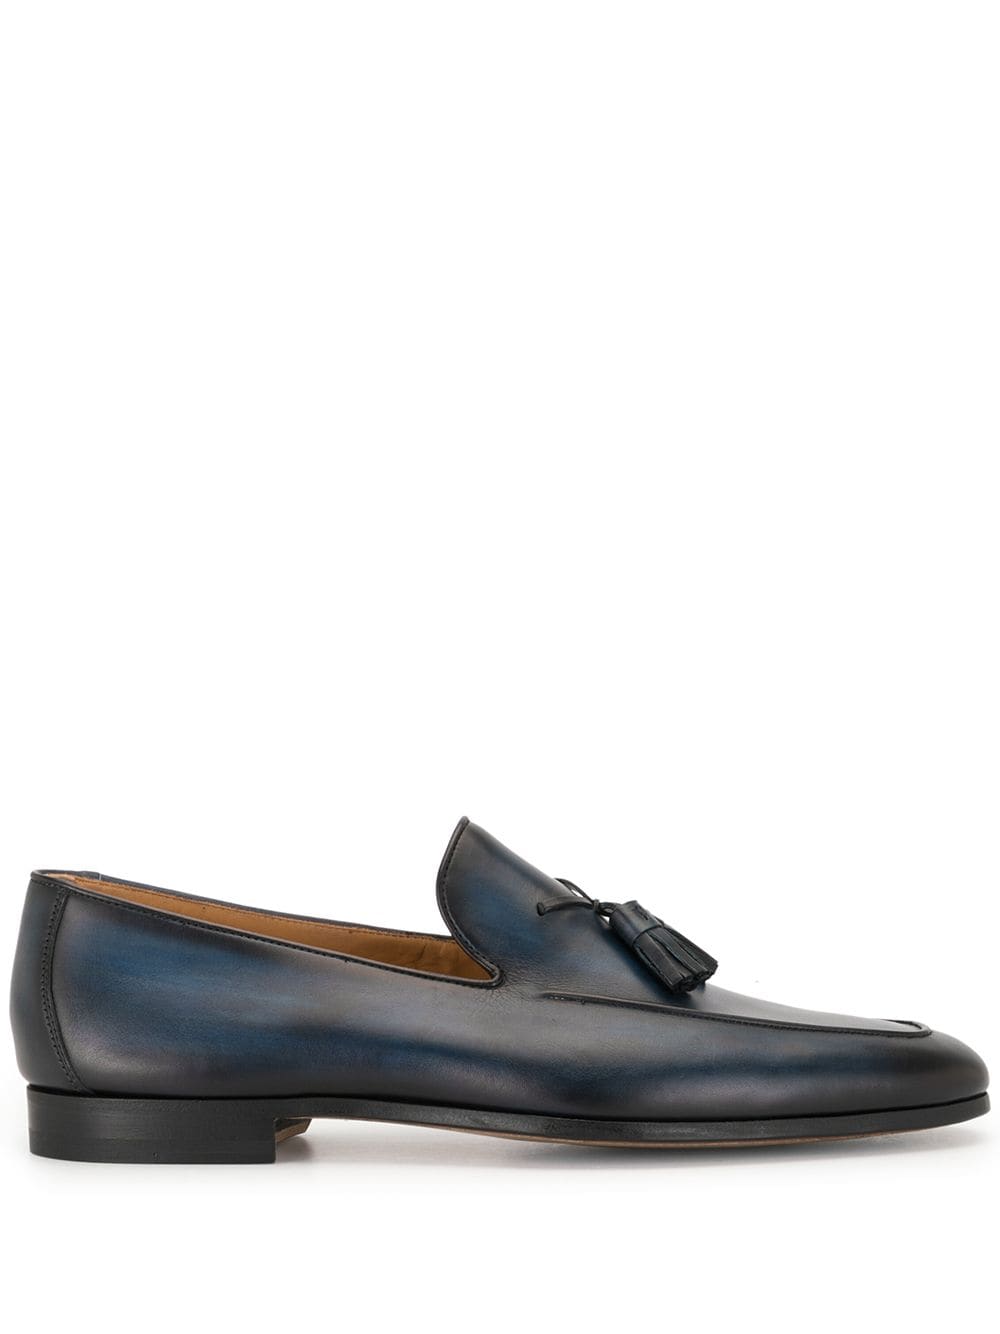 Magnanni tasselled leather loafers - Blue von Magnanni